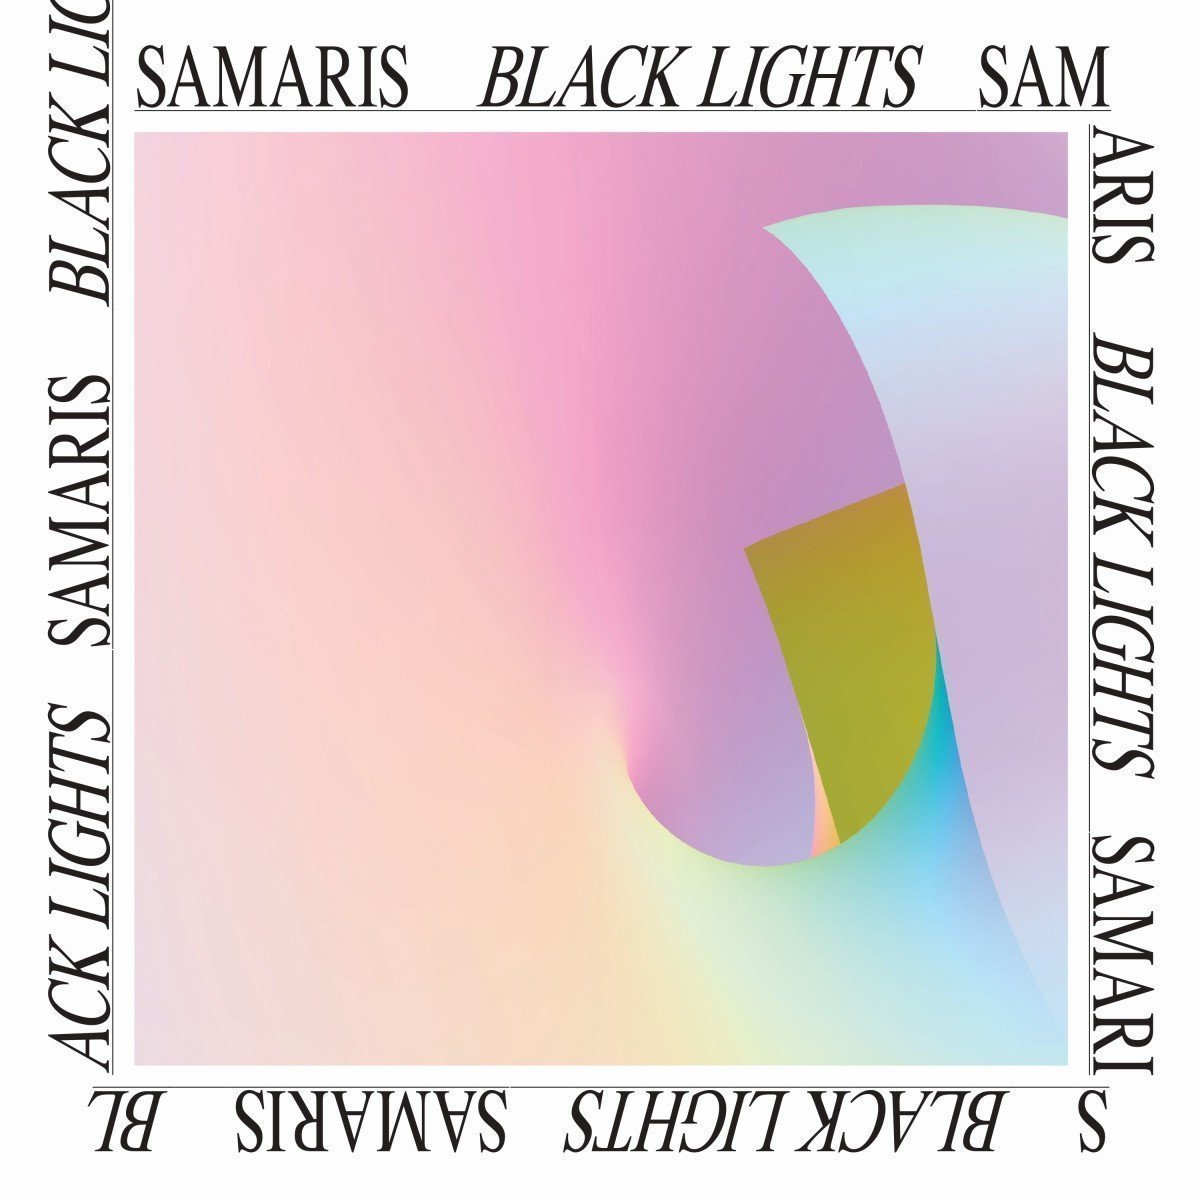 samaris_blacklights_popmonitor_2016